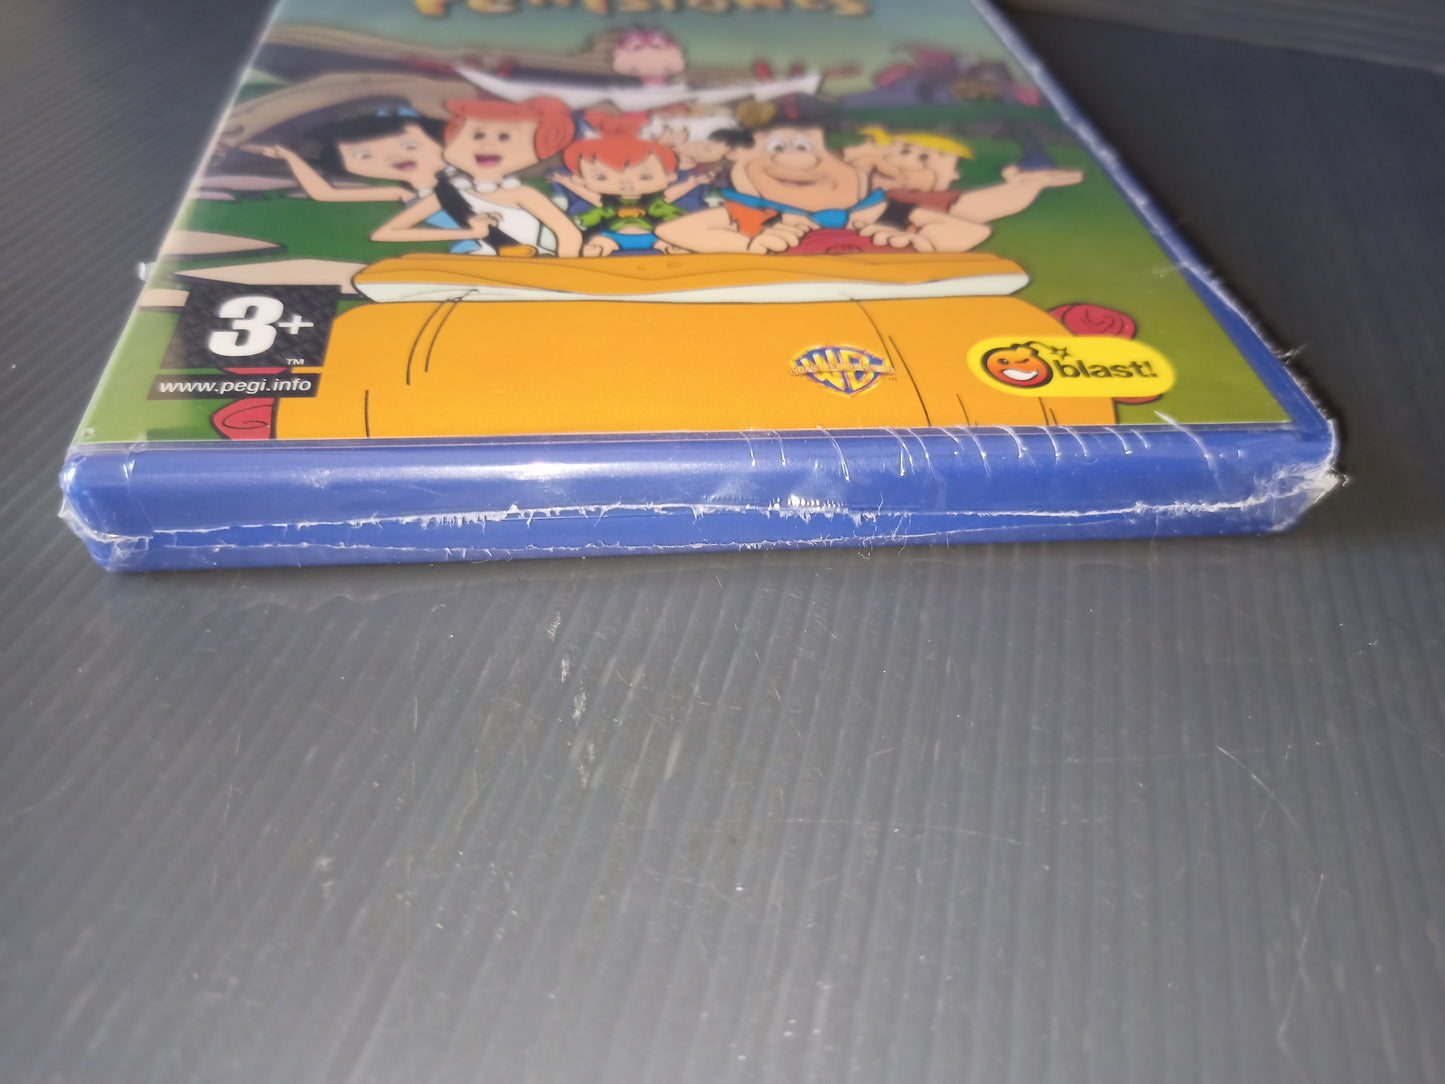 Bedrock Racing Video Game of The Flintstones Ps2, Sealed